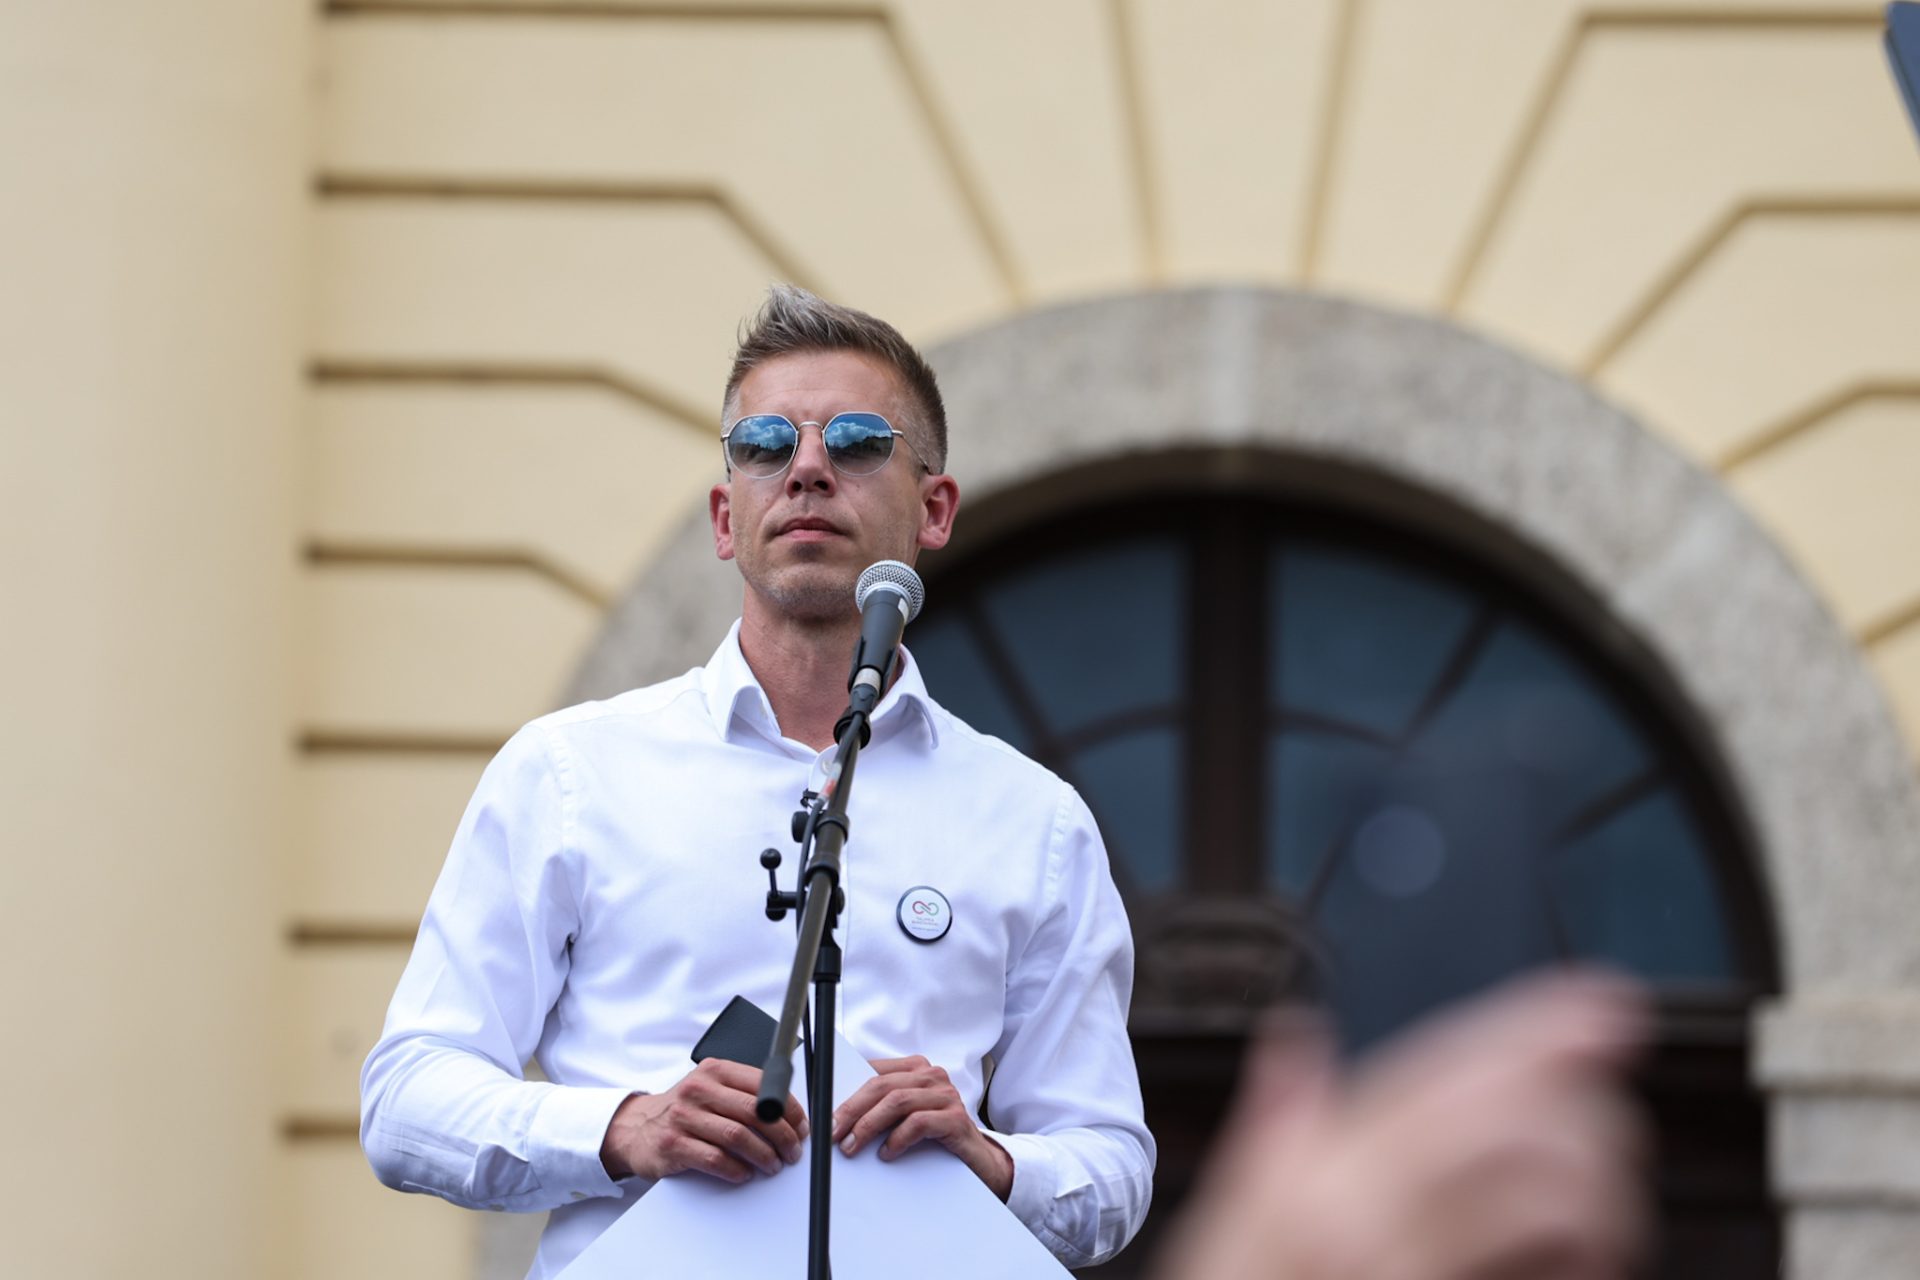 Az ellenzéki politikus, Magyar Péter keményen kritizálja a Fideszt: 'Le kell fejezni azokat, akik nem értenek velük egyet?' - Botrányos kijelentés a politikában